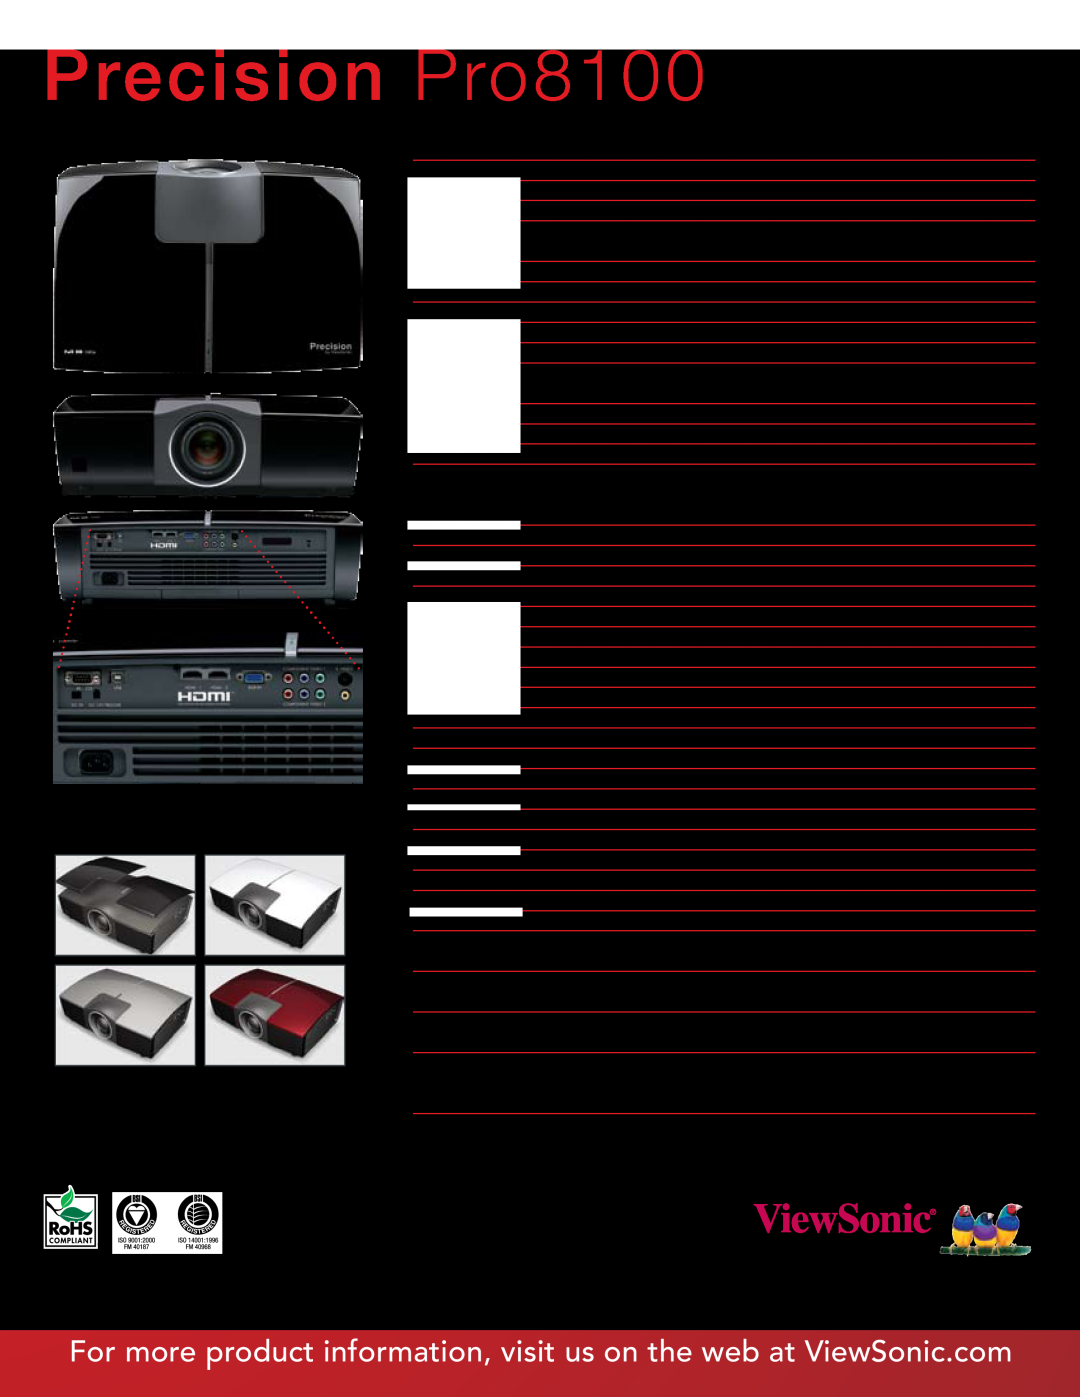 ViewSonic warranty Precision Pro8100 